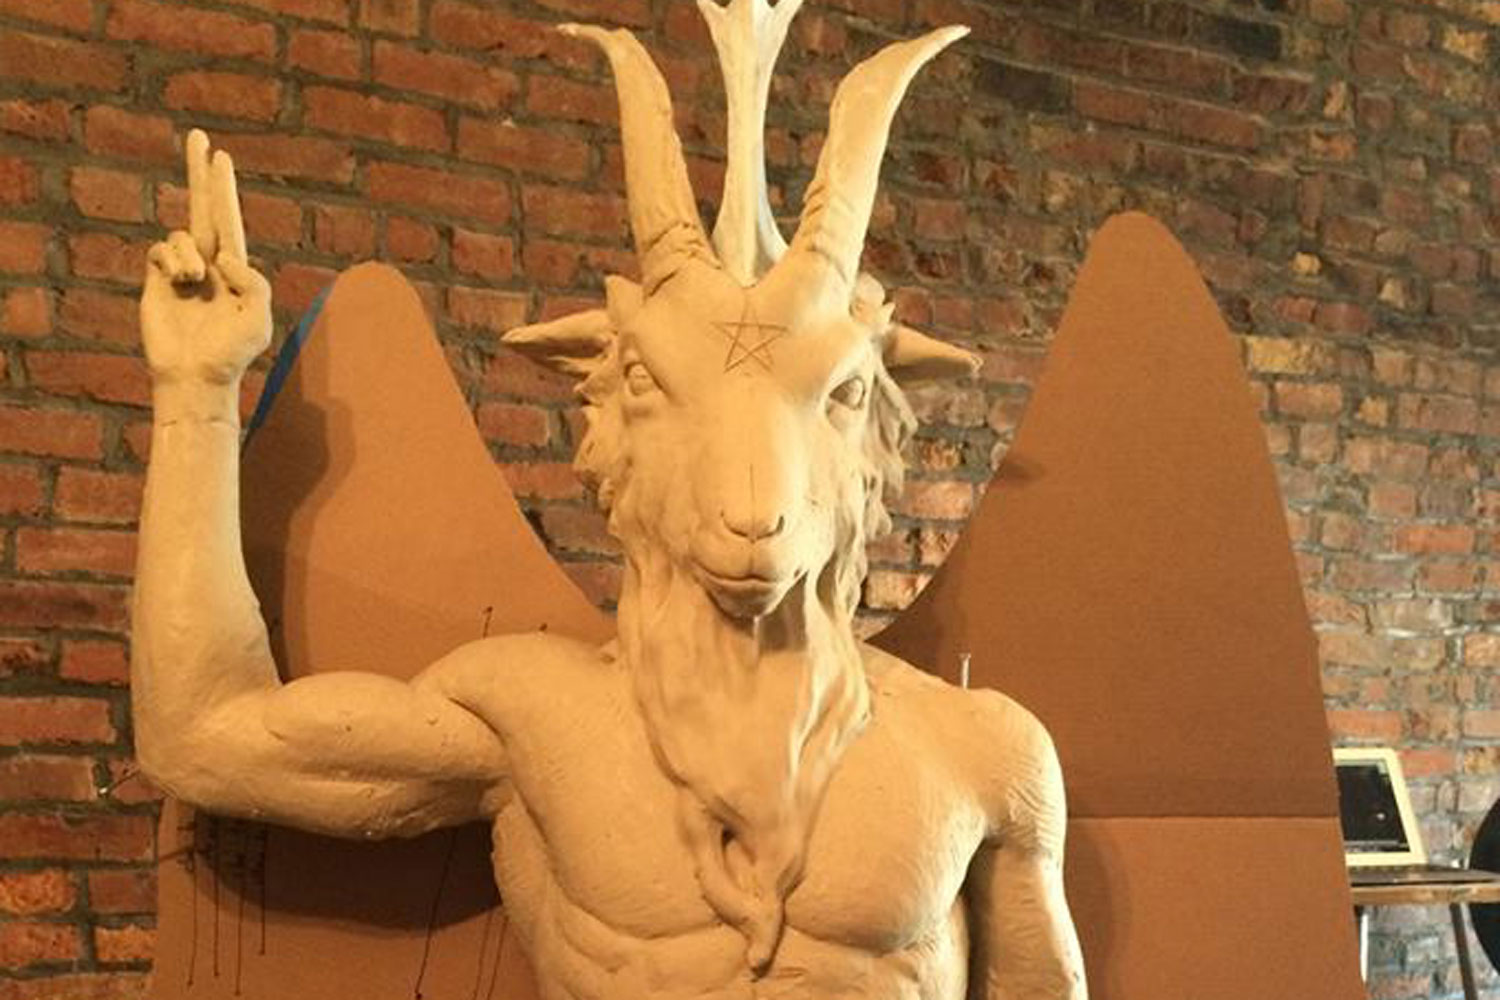 Secta satánica ultima una escultura del diablo en respuesta por escultura cristiana en el Capitolio